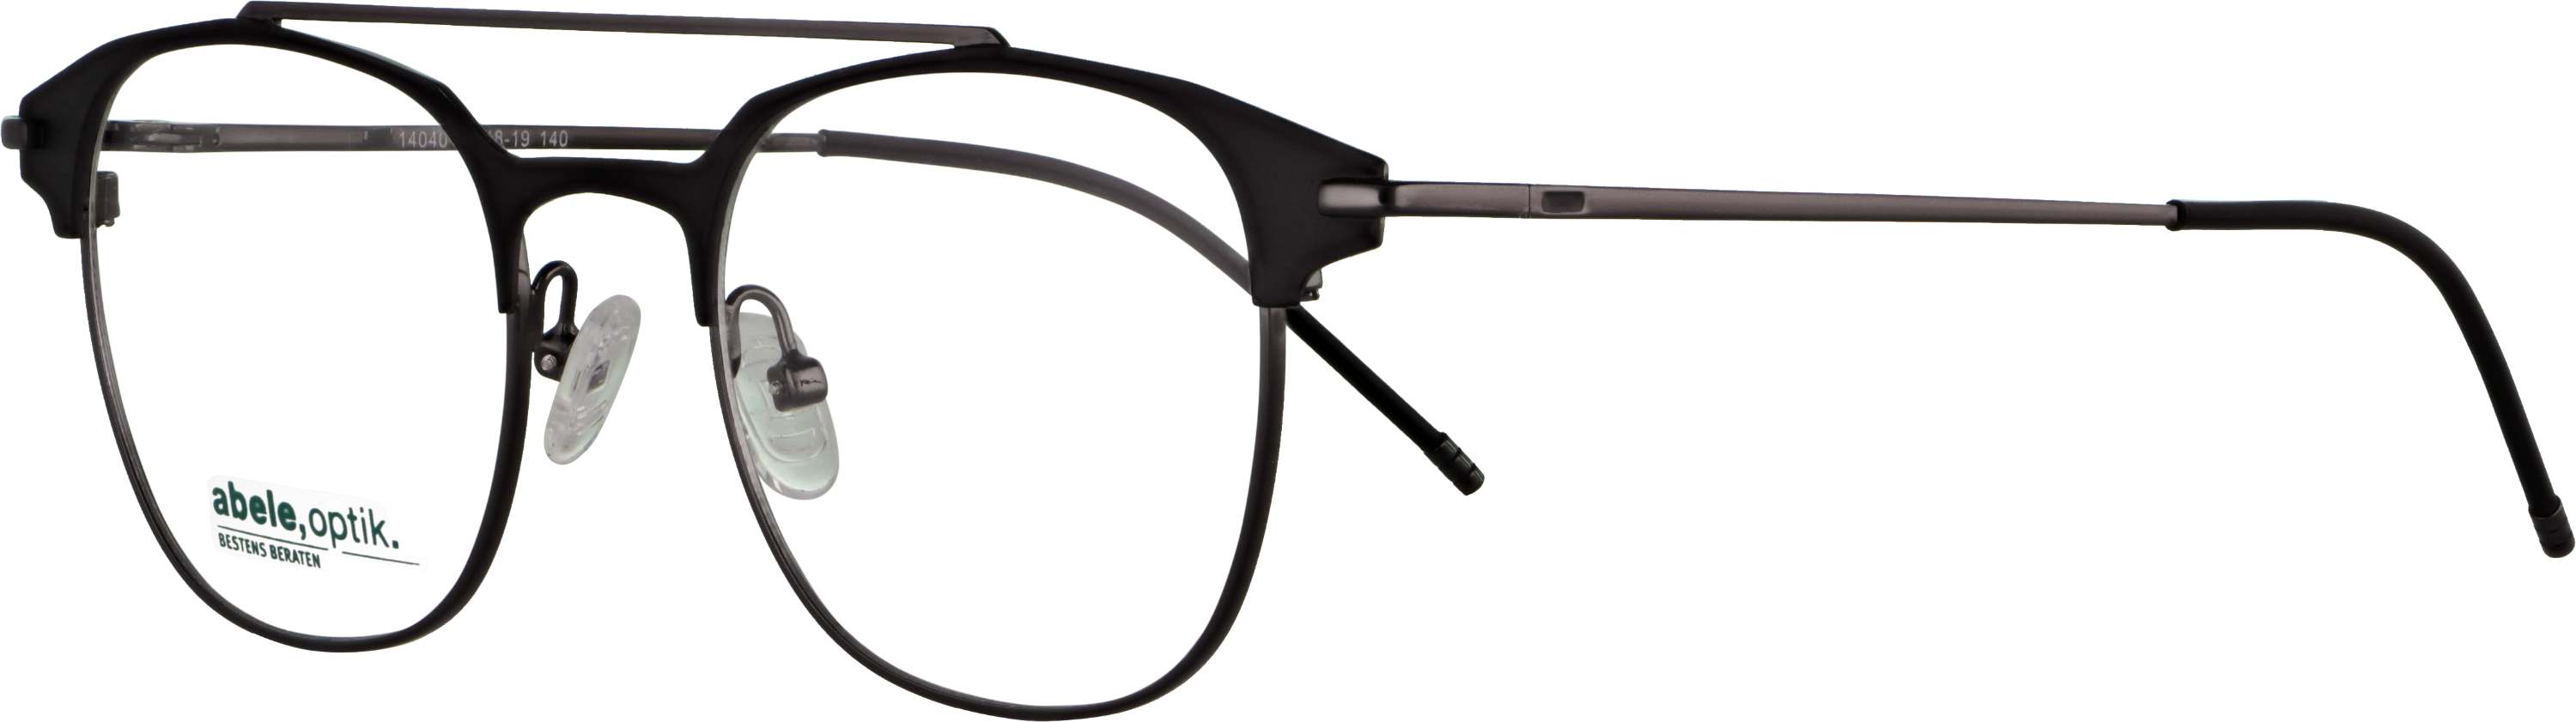 Das Bild zeigt die Korrektionsbrille 140401 von der Marke Abele Optik in schwarz matt / gun.